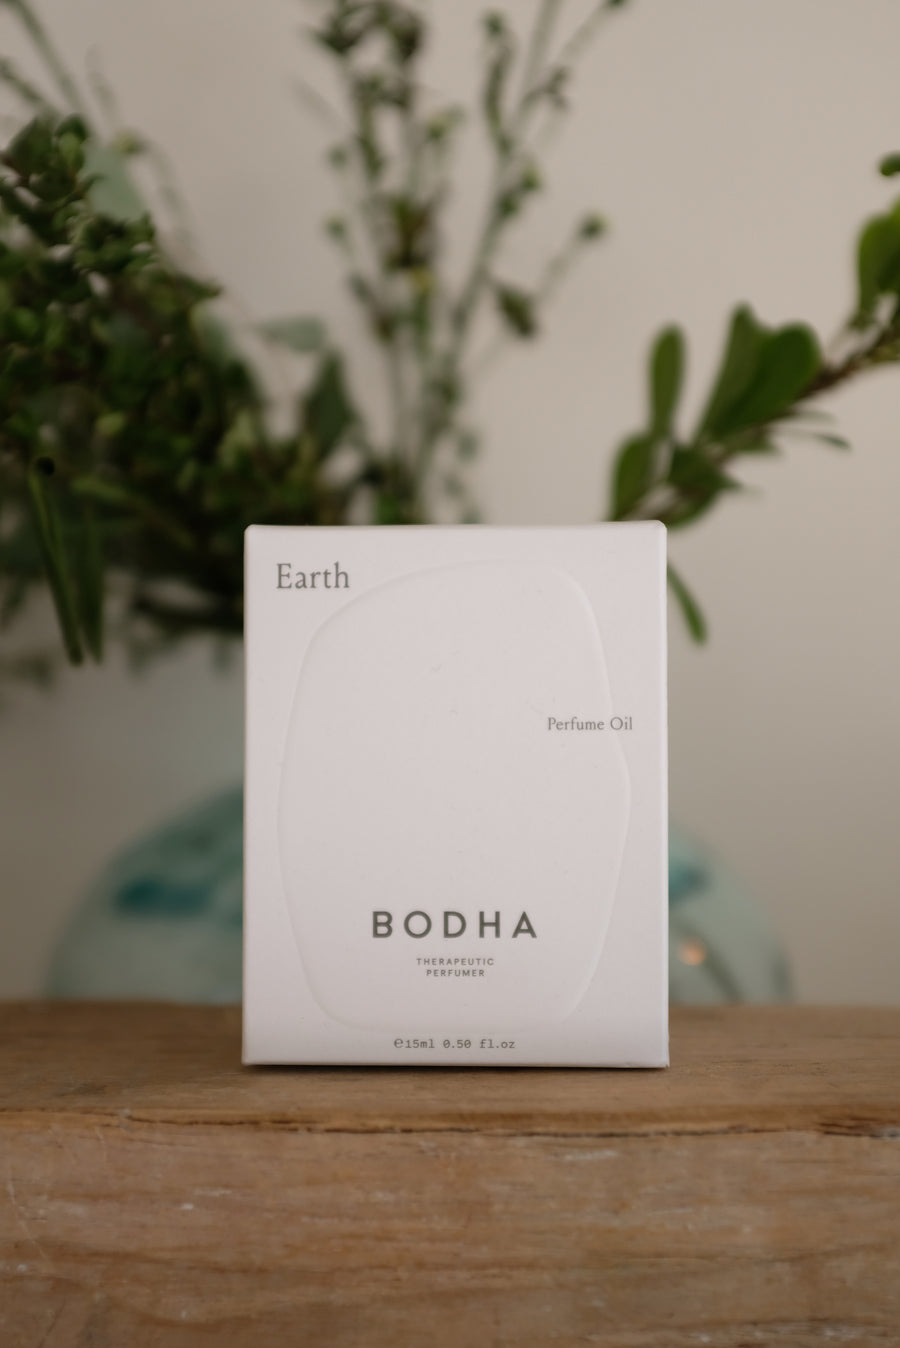 Bodha Earth Therapeutic Perfume Oil